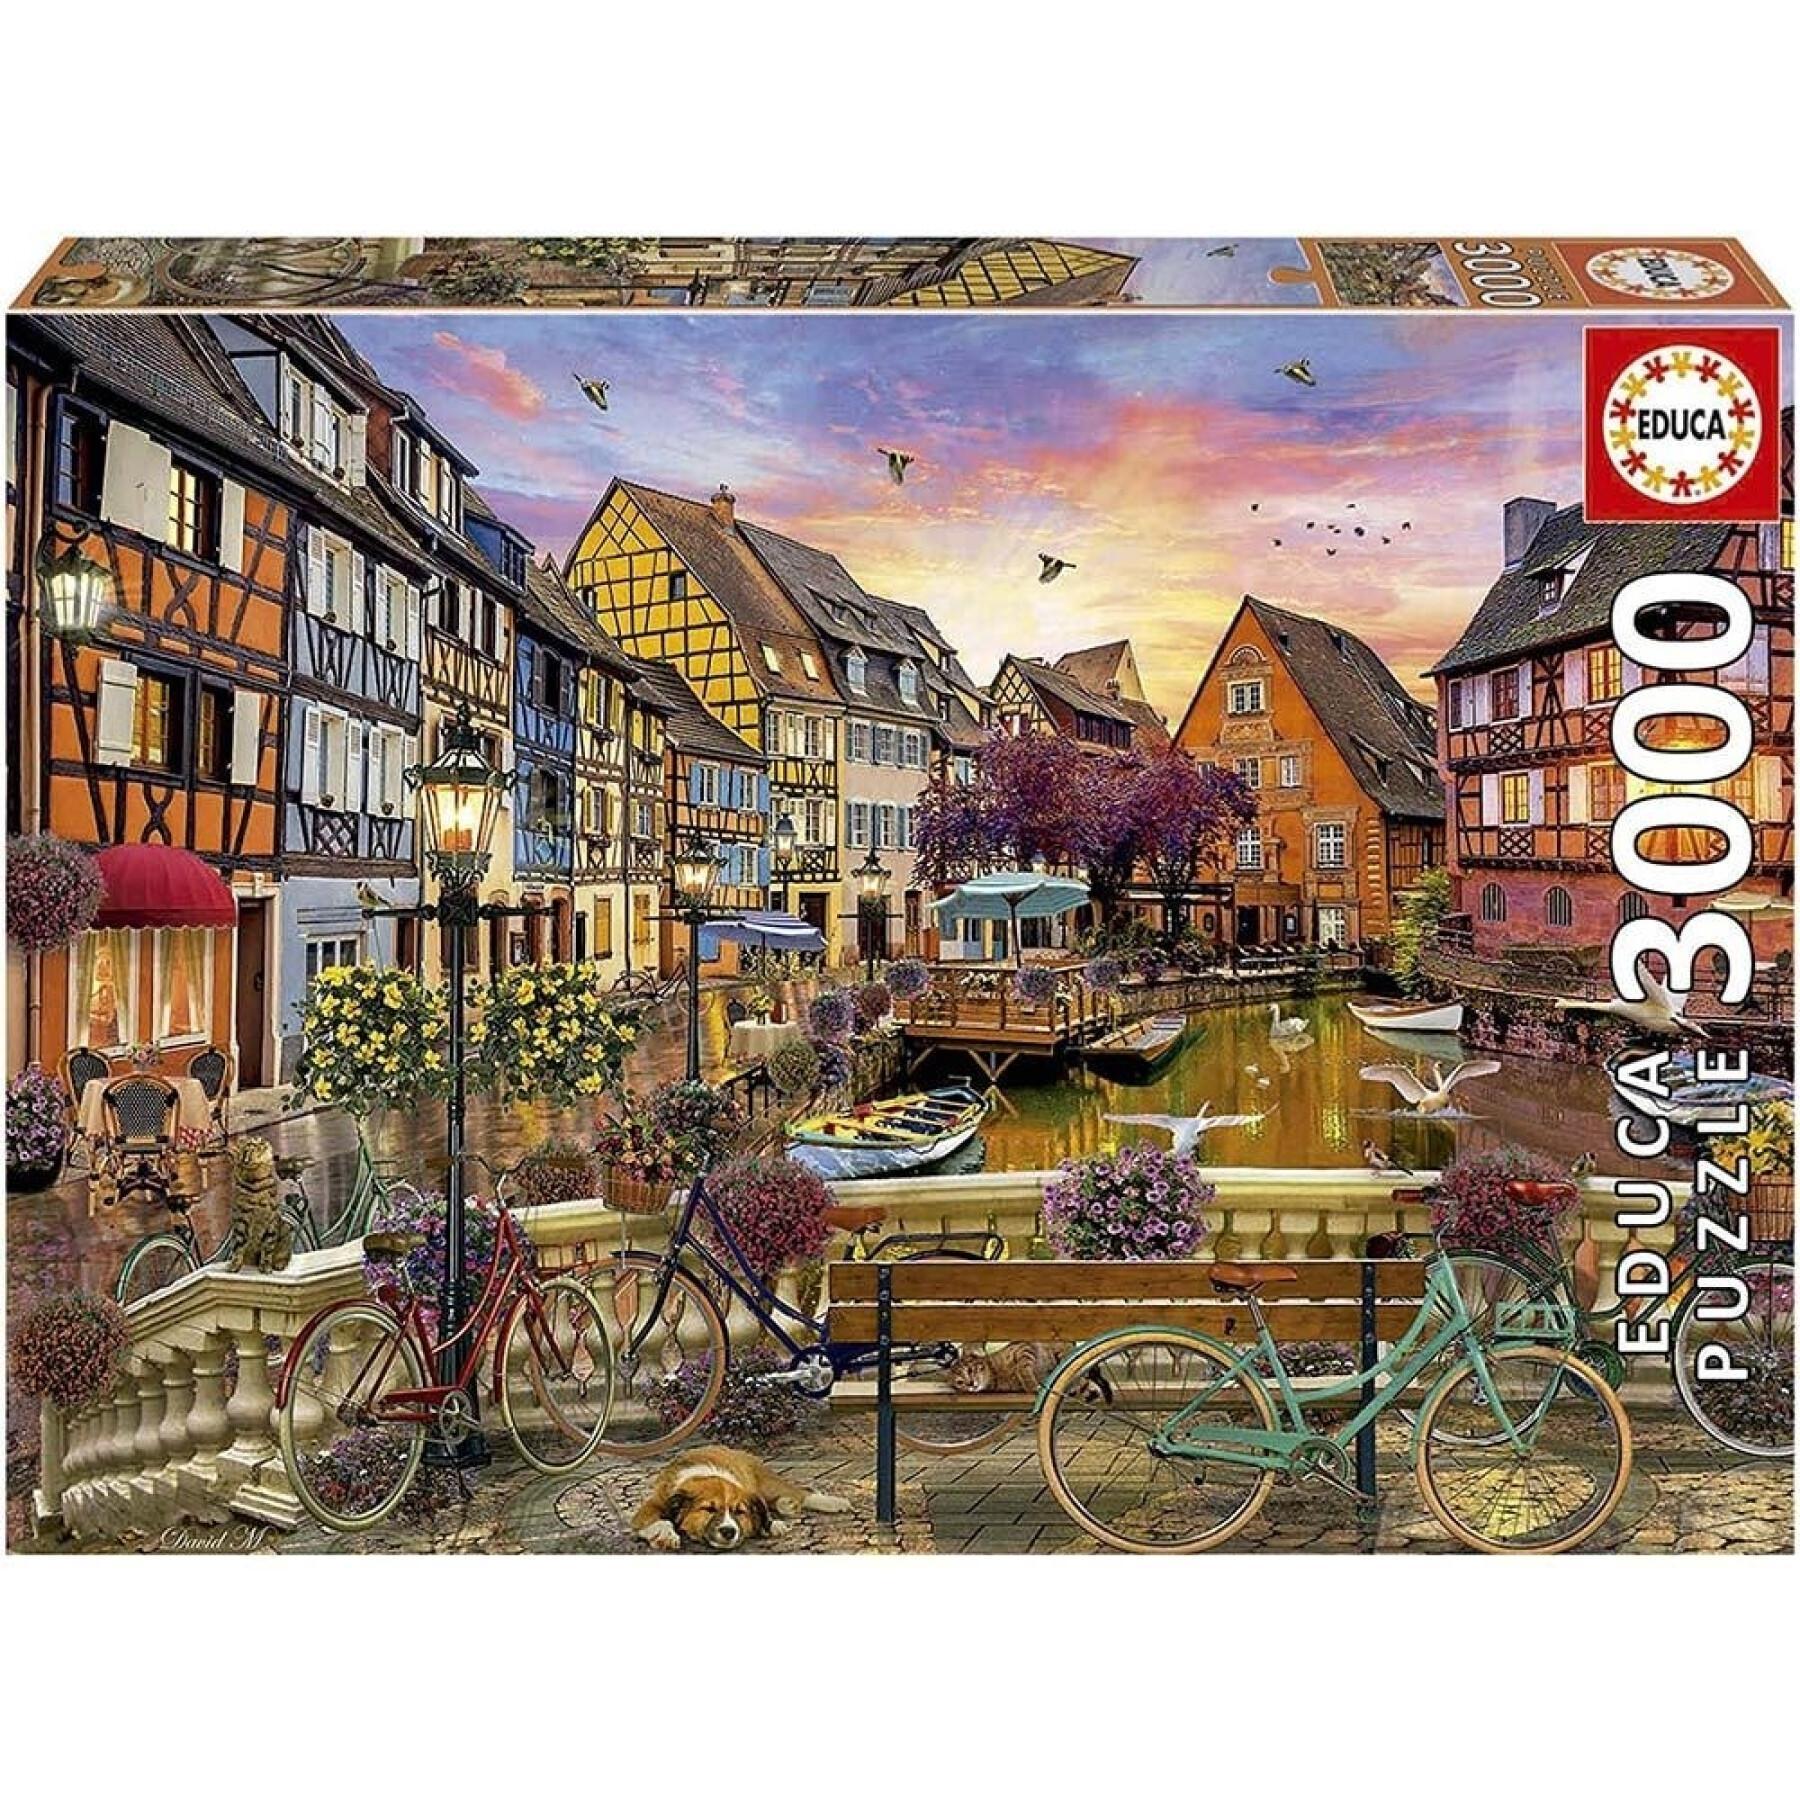 3000 piece puzzle Educa Colmar-Francia